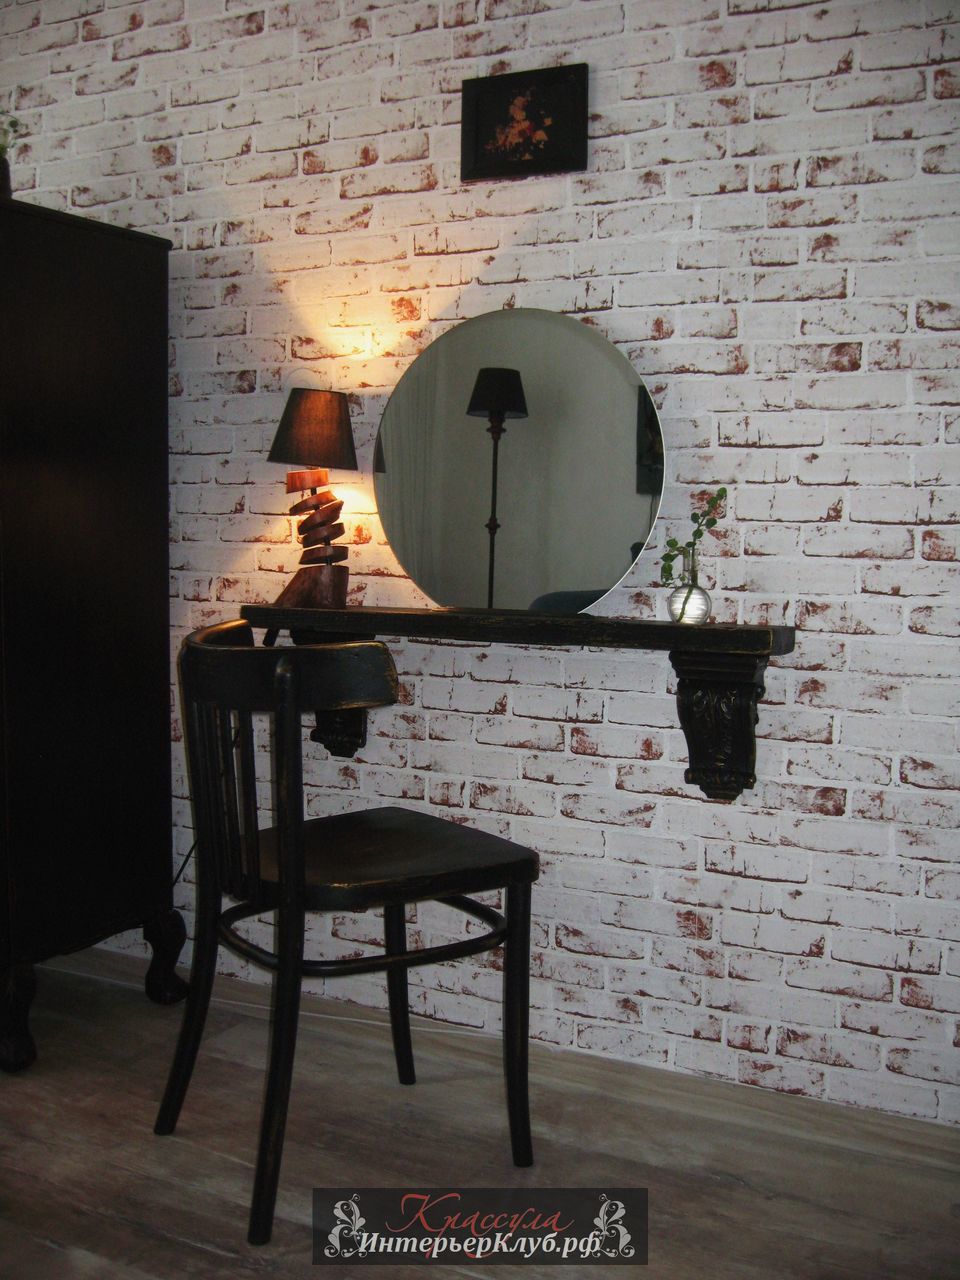 36 Комплект Блюз - зеркало с полкой, стул. Полка - амбарная доска, стул после реставрации